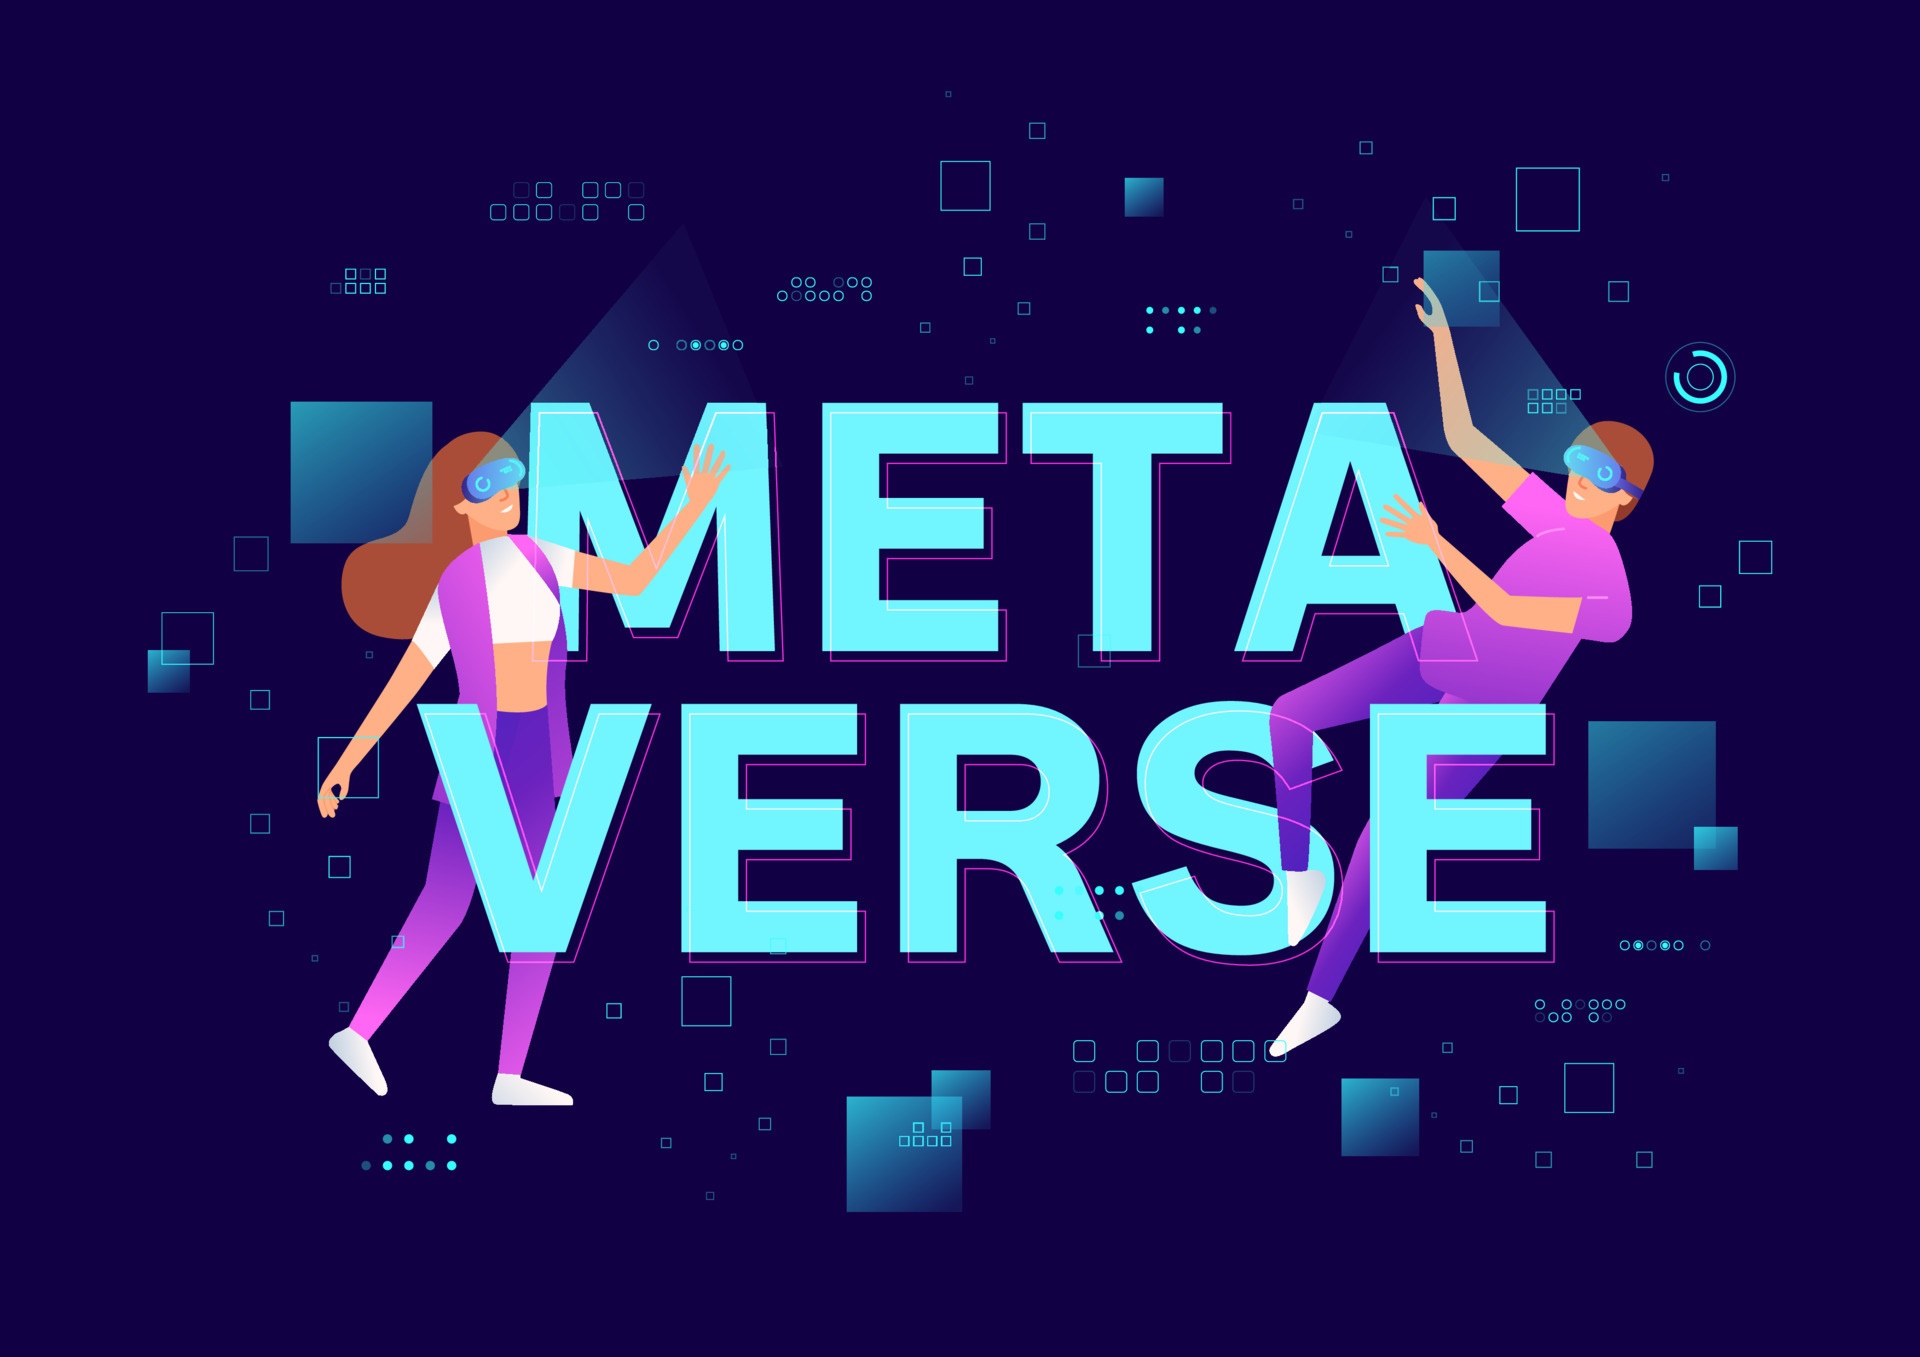 这是一张描绘两个人在数字化空间中互动的插画，他们身边有“METAVERSE”字样，暗示虚拟现实或增强现实的概念。